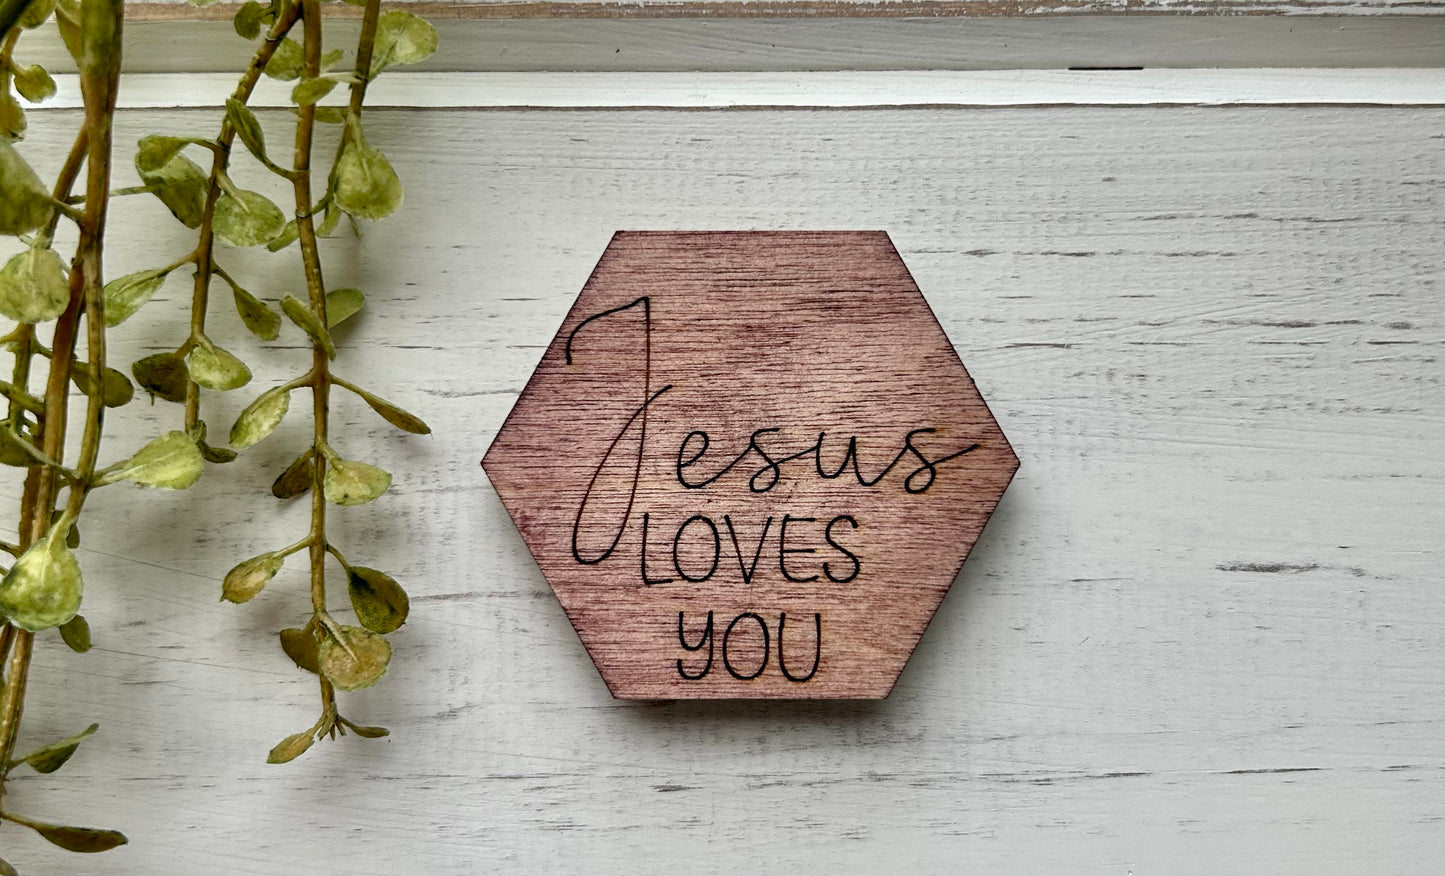 wood "Jesus loves you" magnet